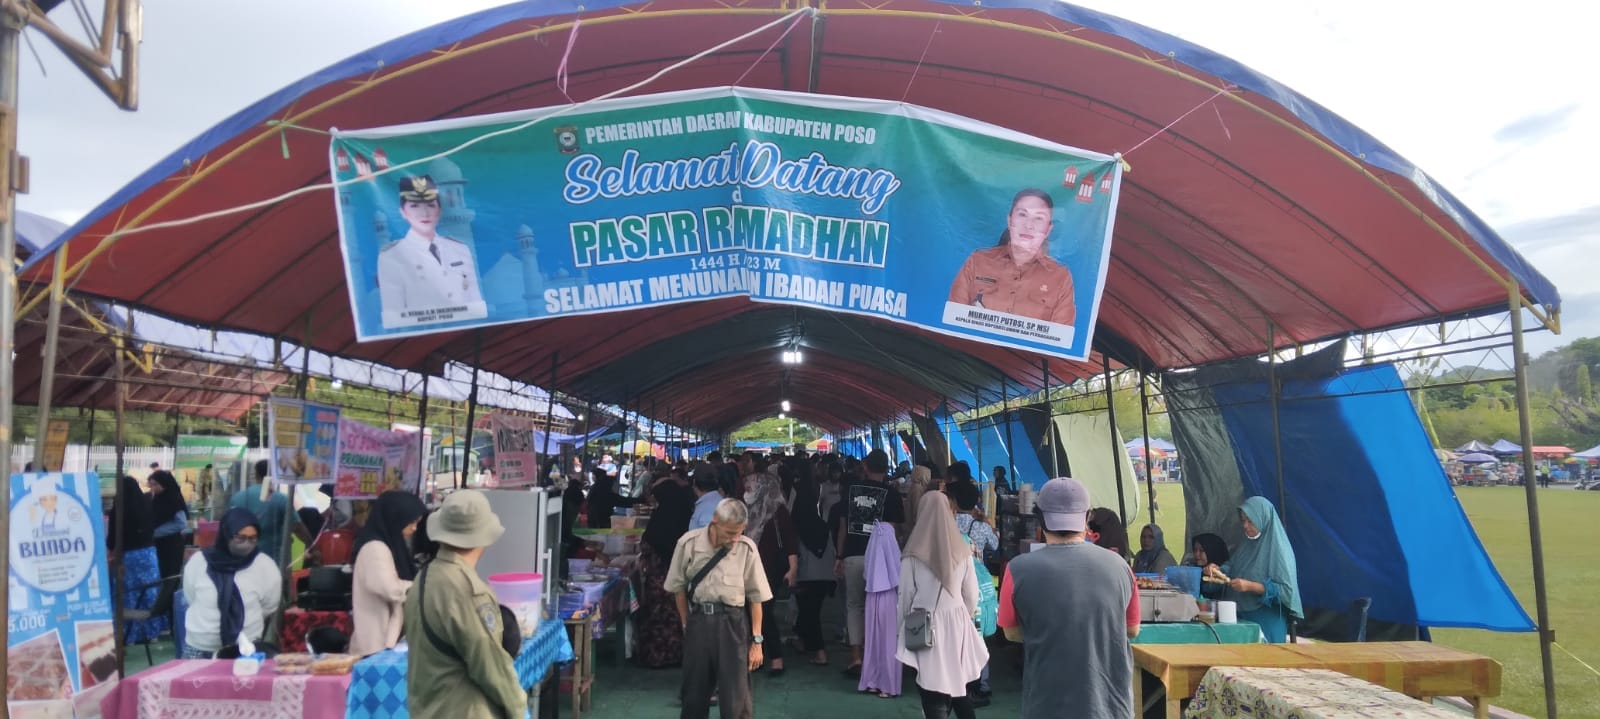 Pasar ramadhan Poso